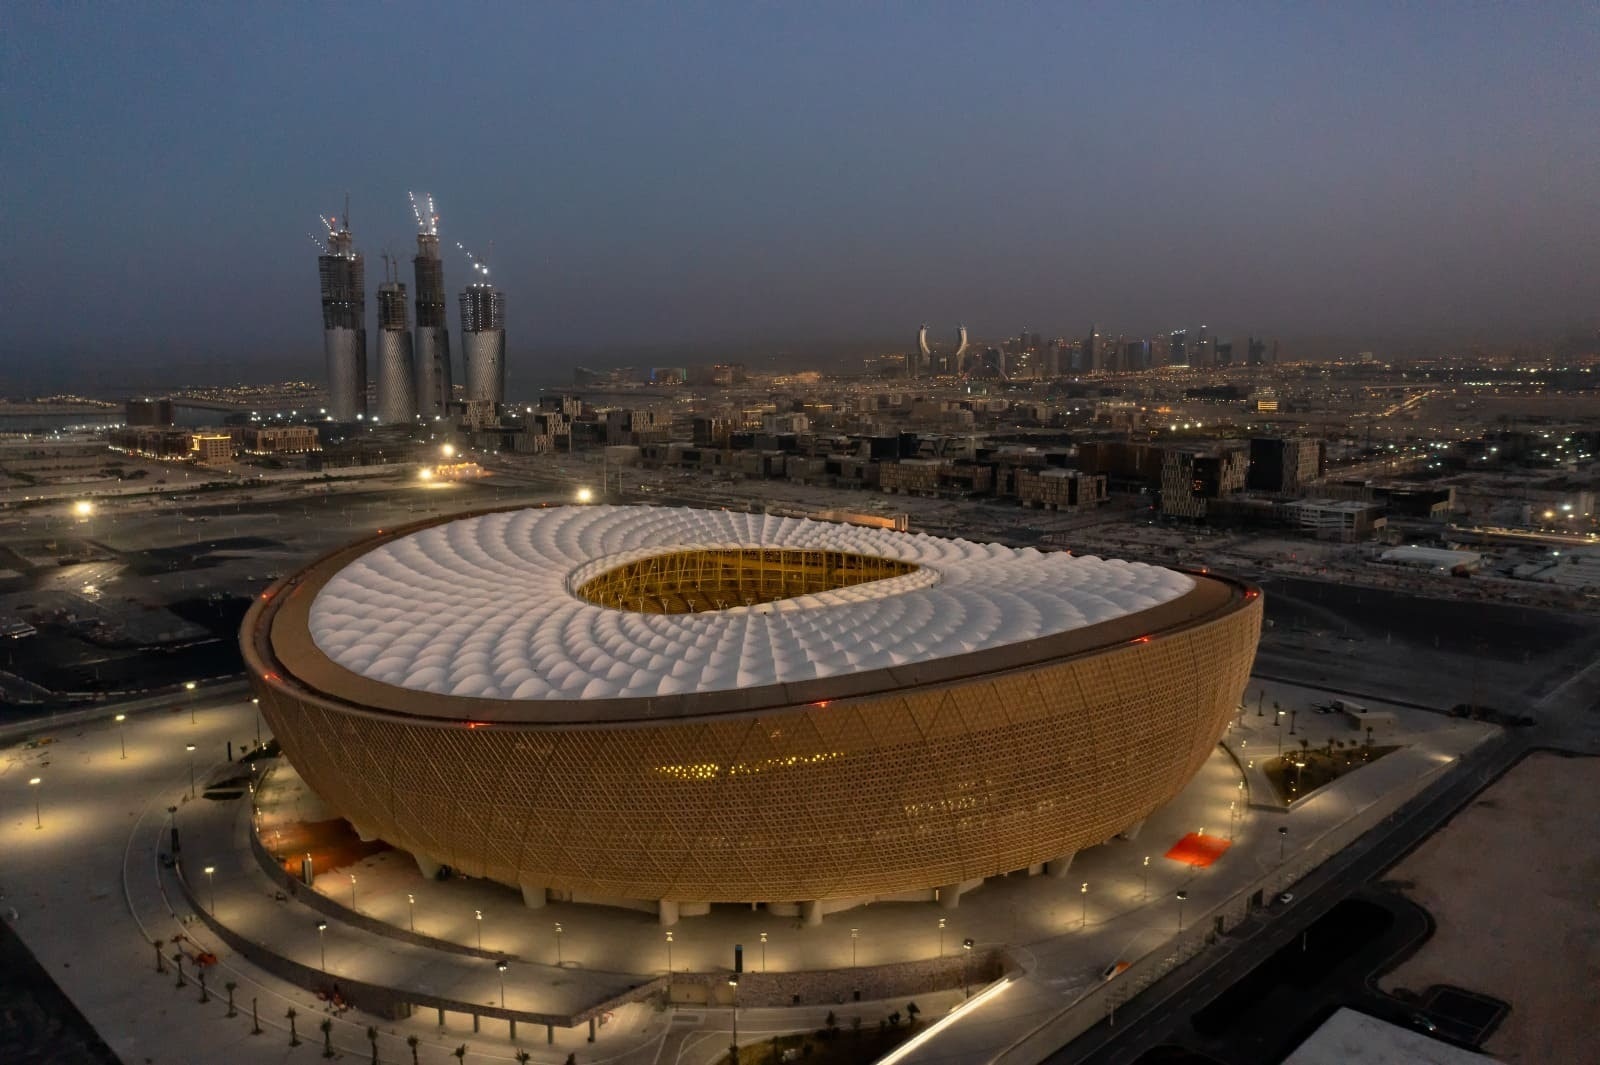 Imagen exterior del Estadio de Lusail en Qatar, escenario de la final de la Copa del Mundo de 2022. EP.